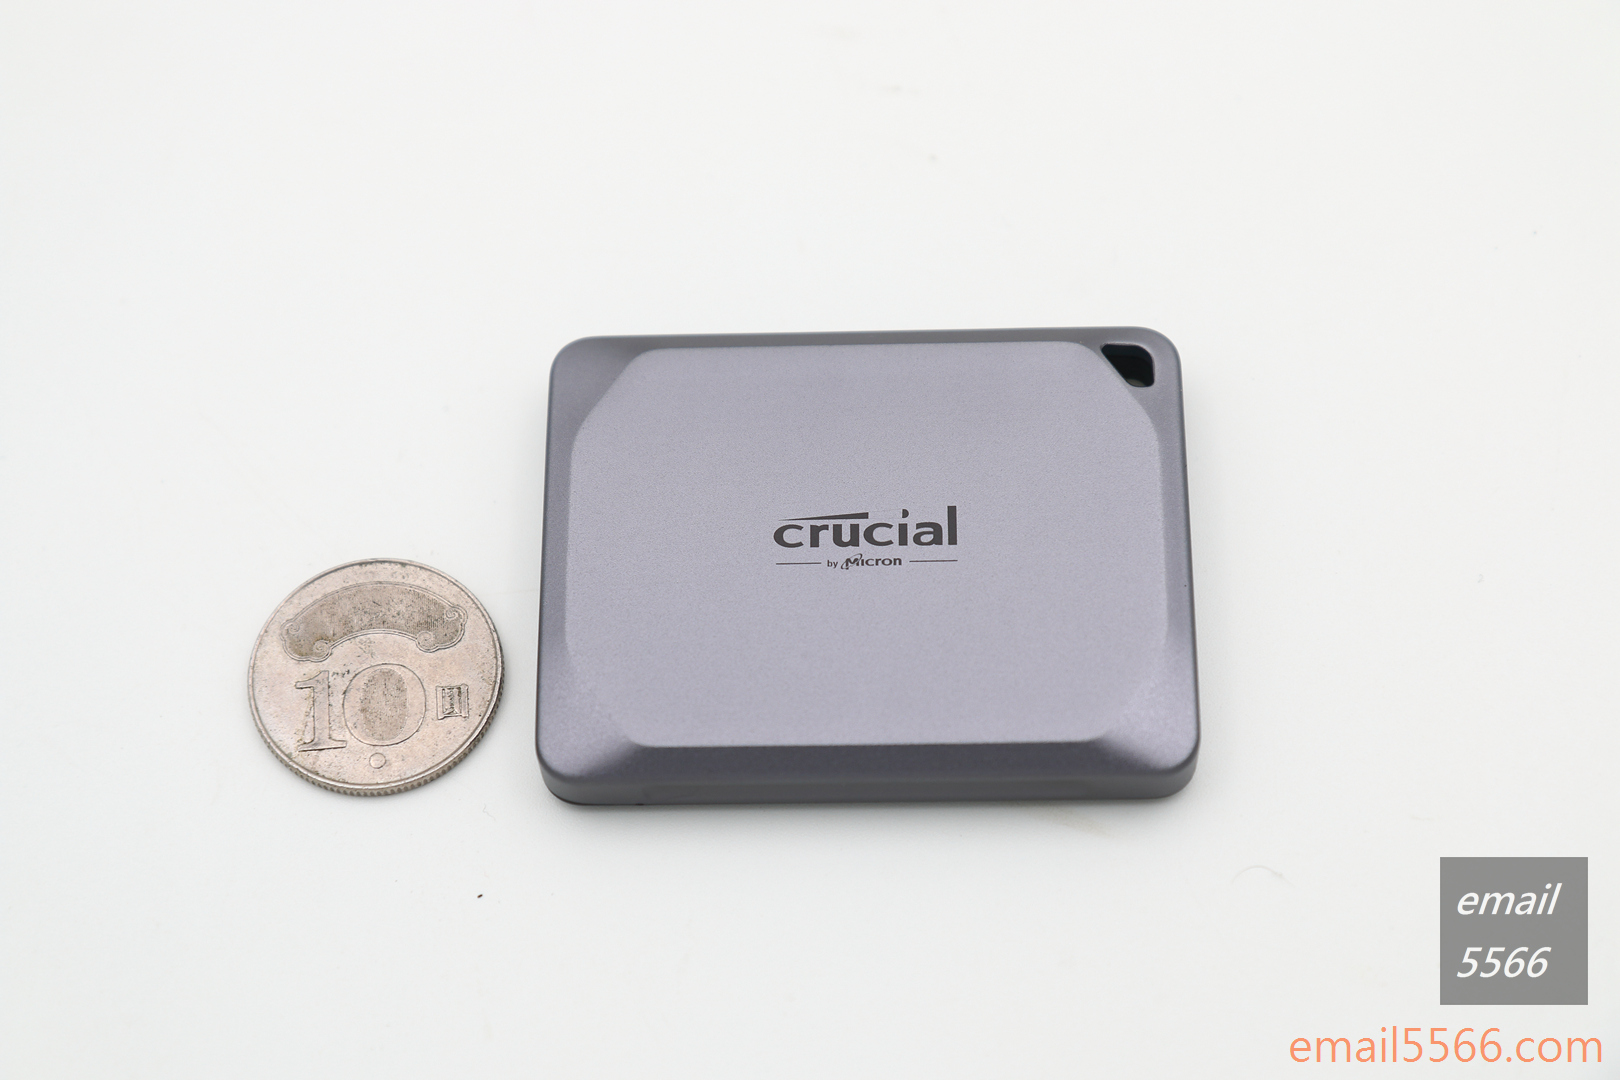 美光 Crucial X9 Pro 行動SSD硬碟 2TB 開箱-正面採用陽極氧化鋁的外殼設計